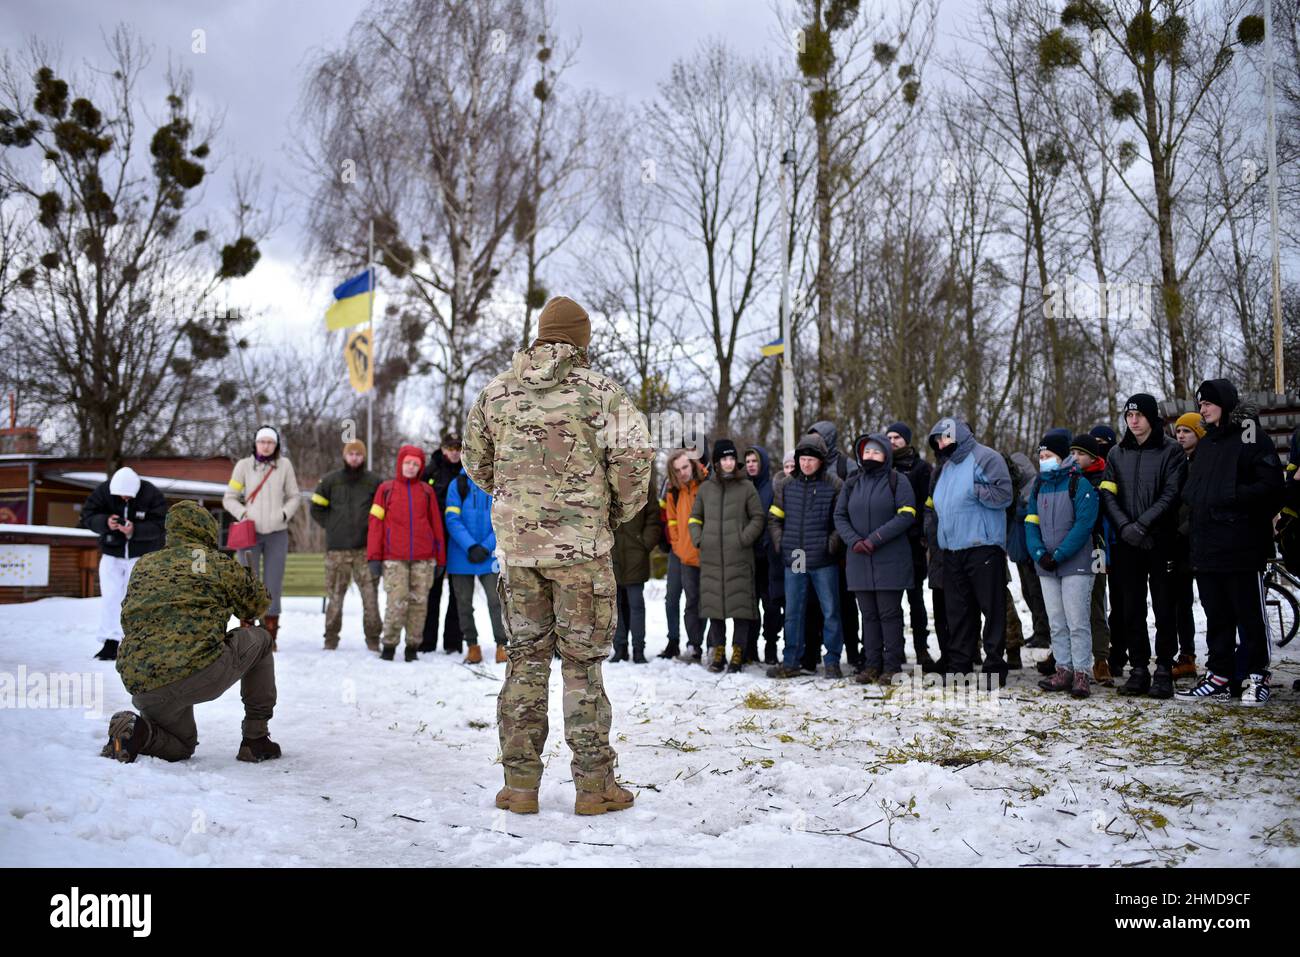 LVIV, UKRAINE - 5. FEBRUAR 2022 - Instruktoren lehren Menschen während einer groß angelegten Übung, um Zivilisten auf die von der Lv organisierten Feindseligkeiten vorzubereiten Stockfoto